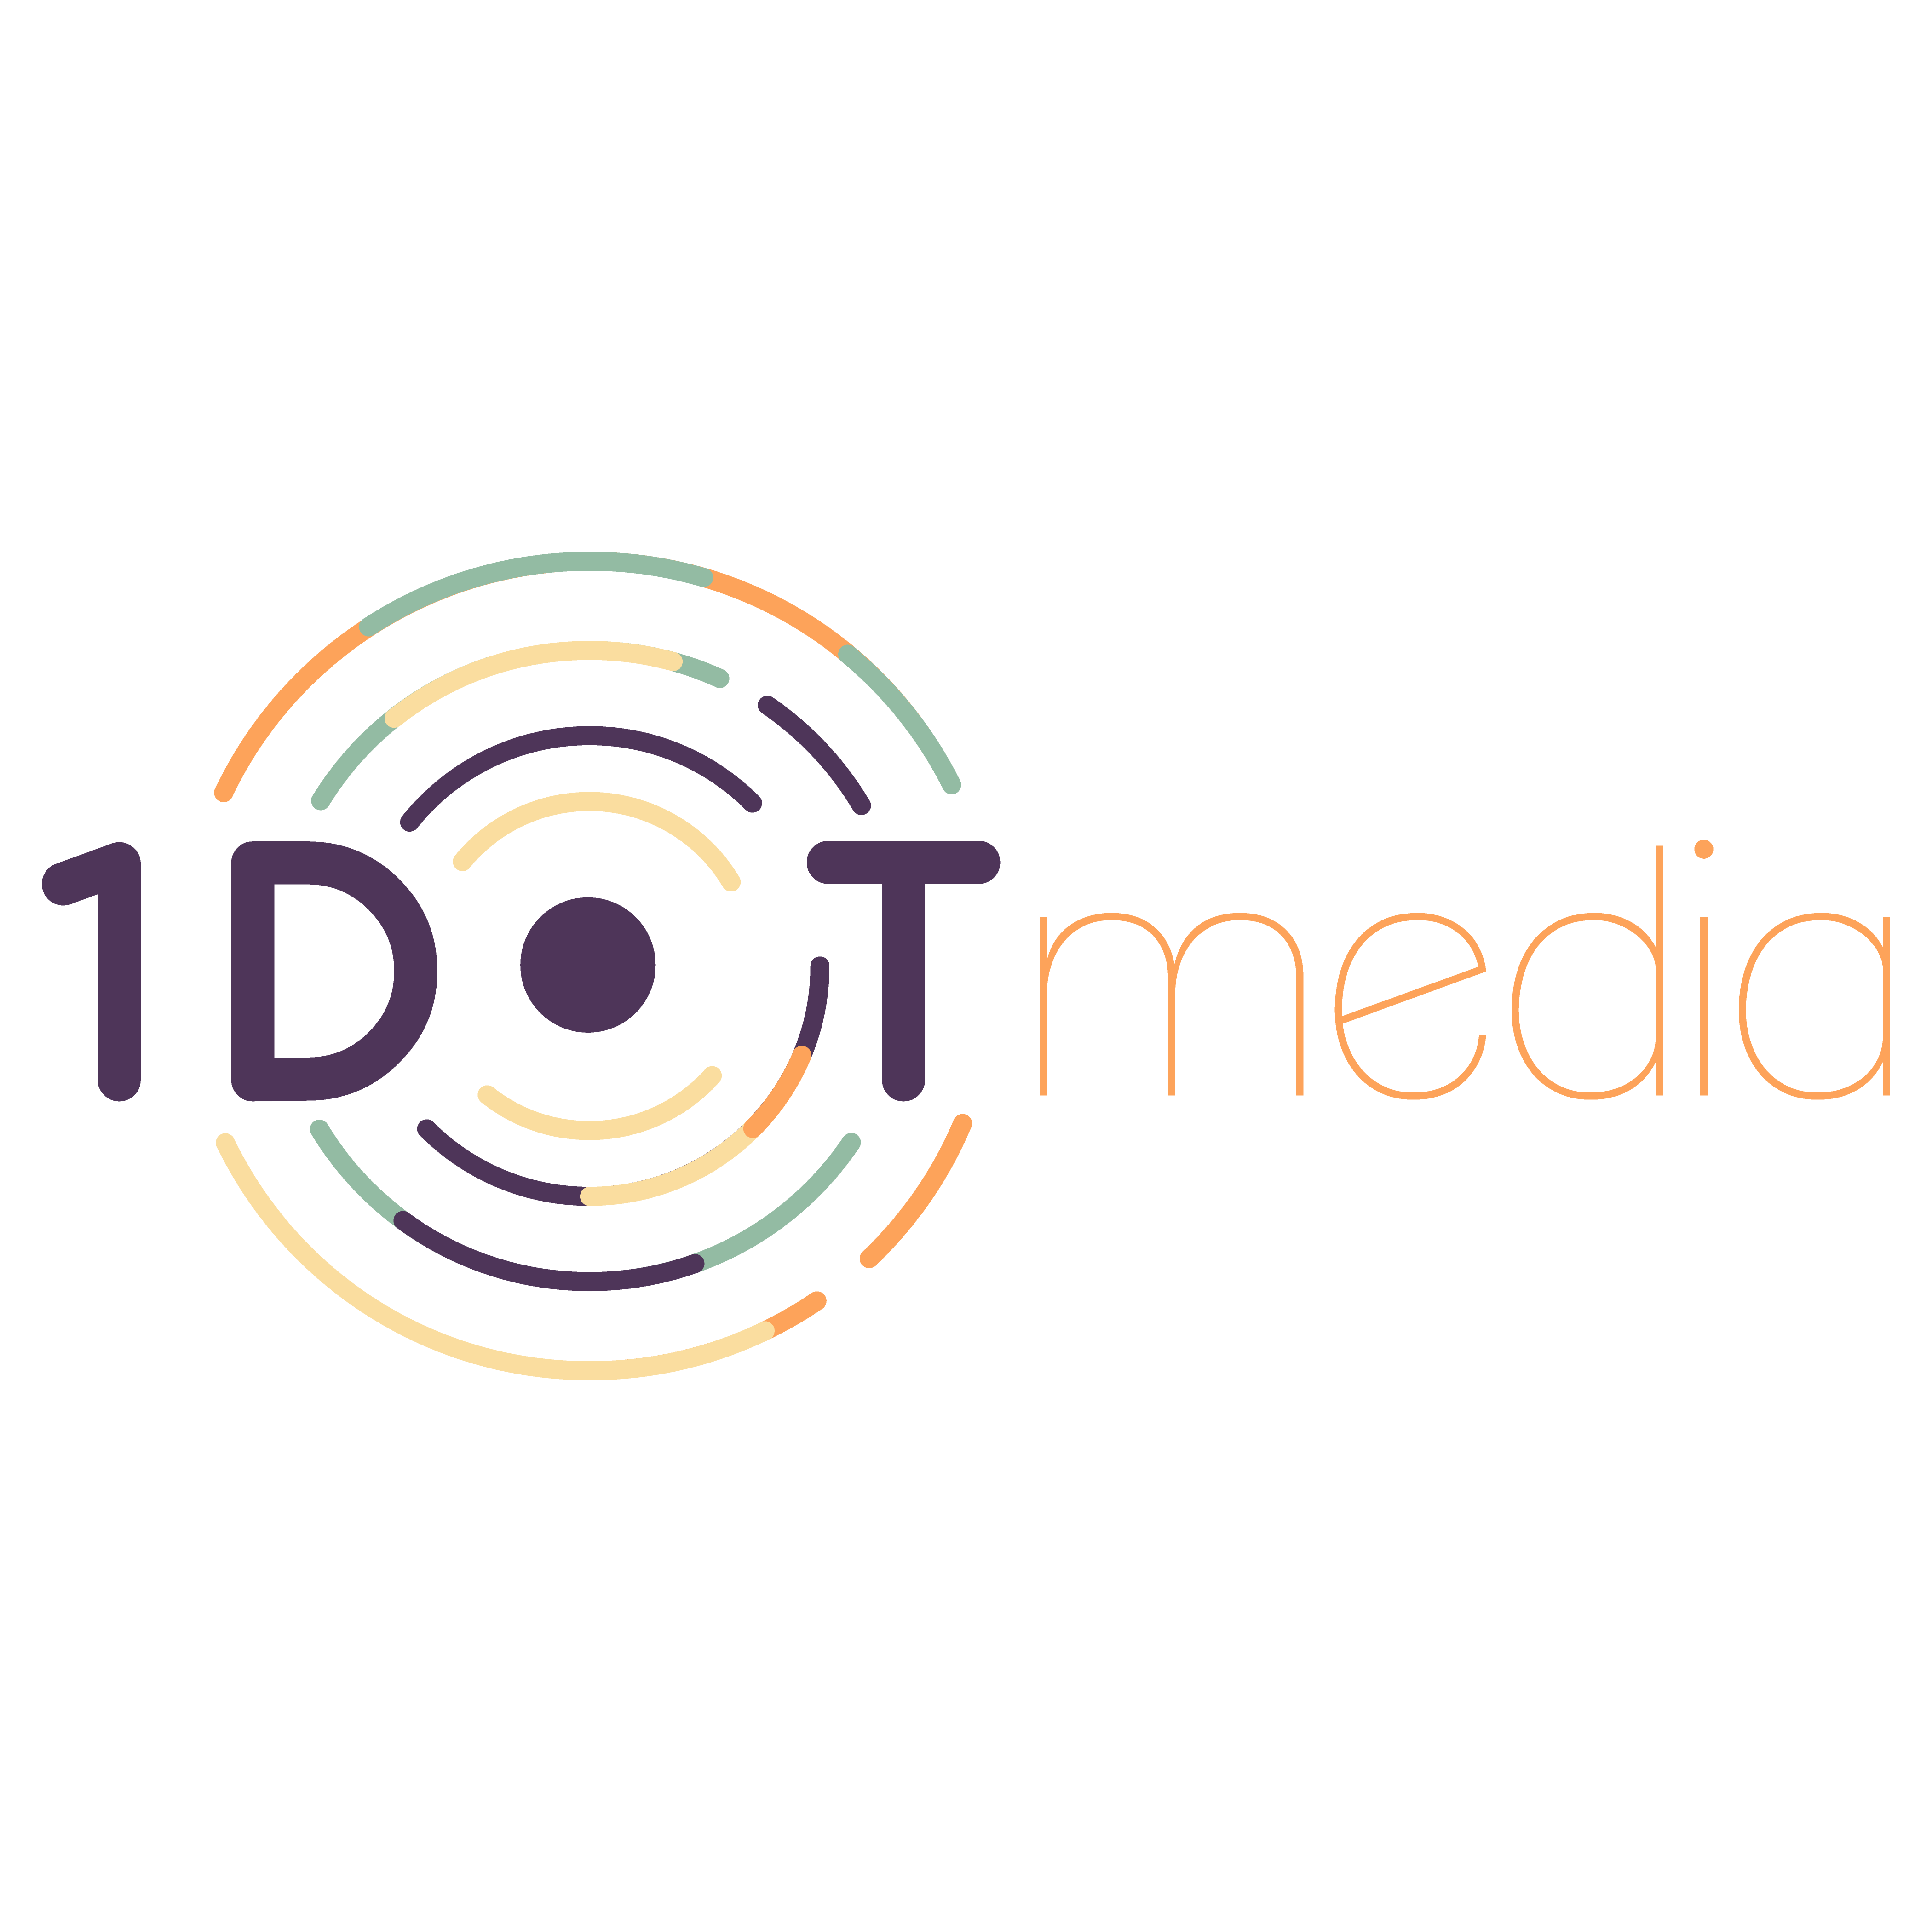 1 Dot Media